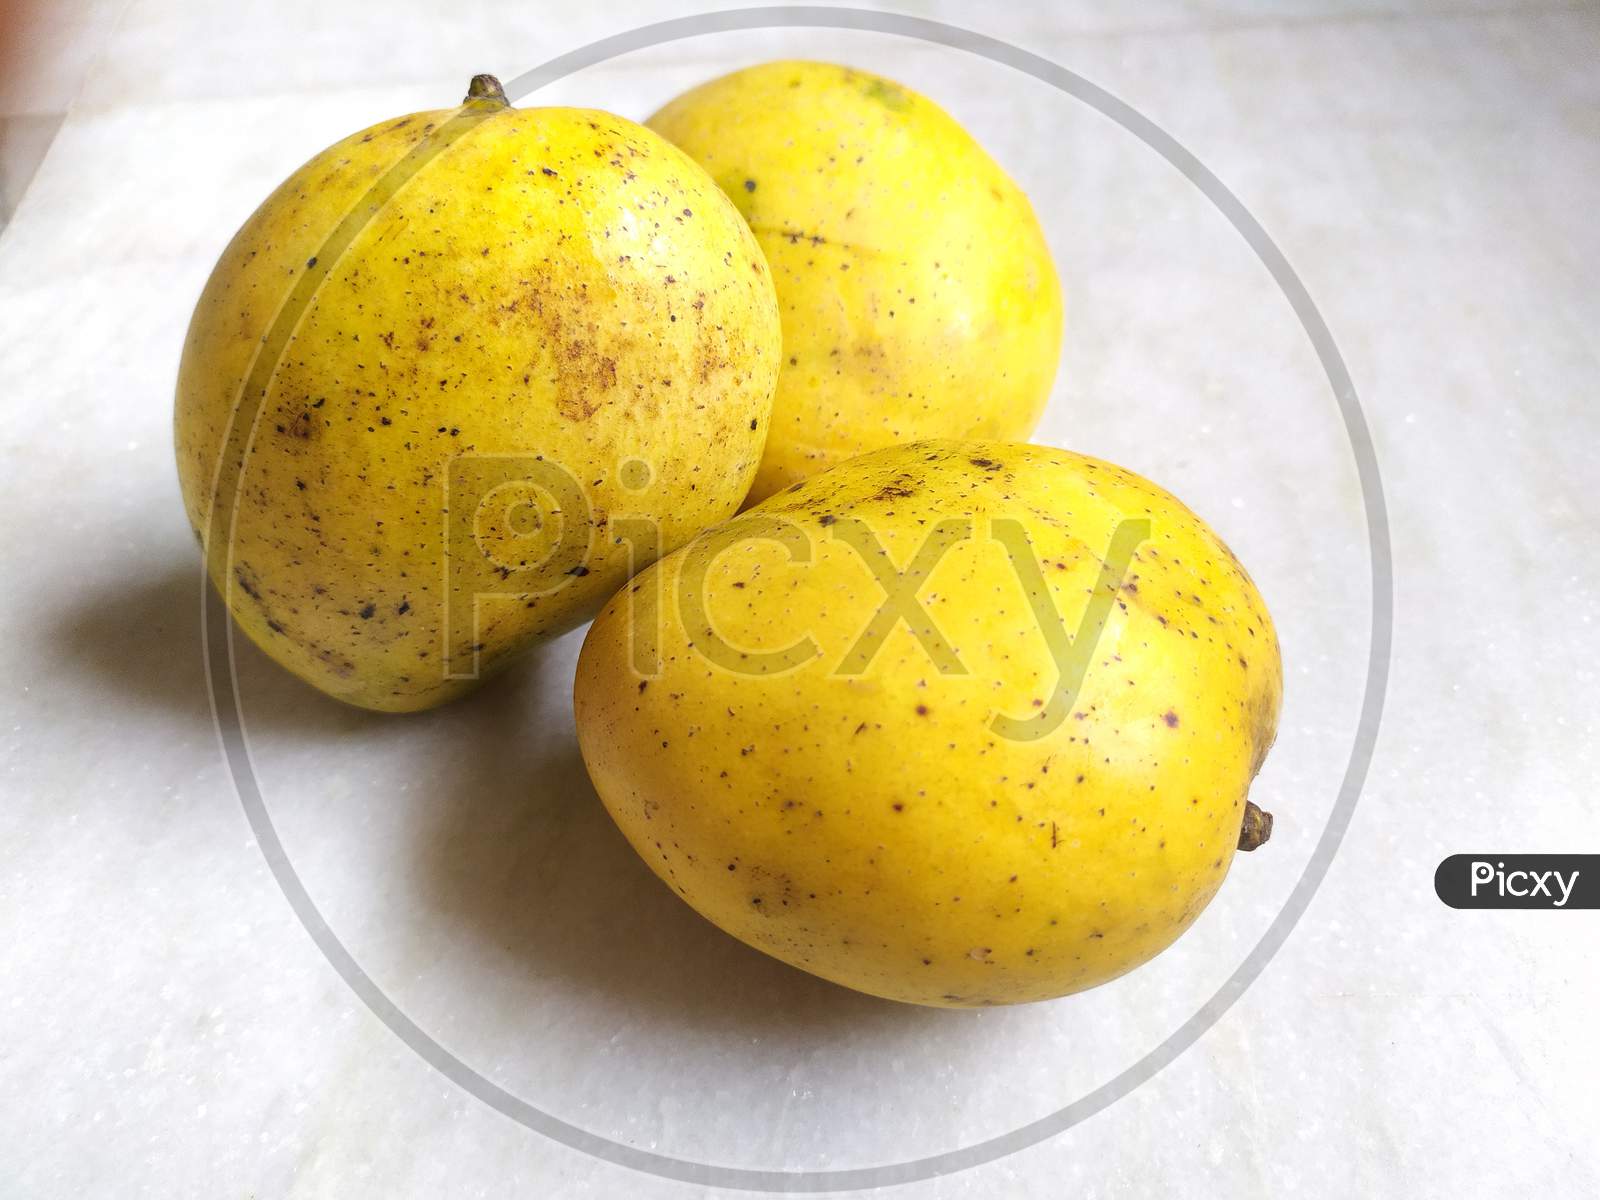 Whole mangoes on floor.